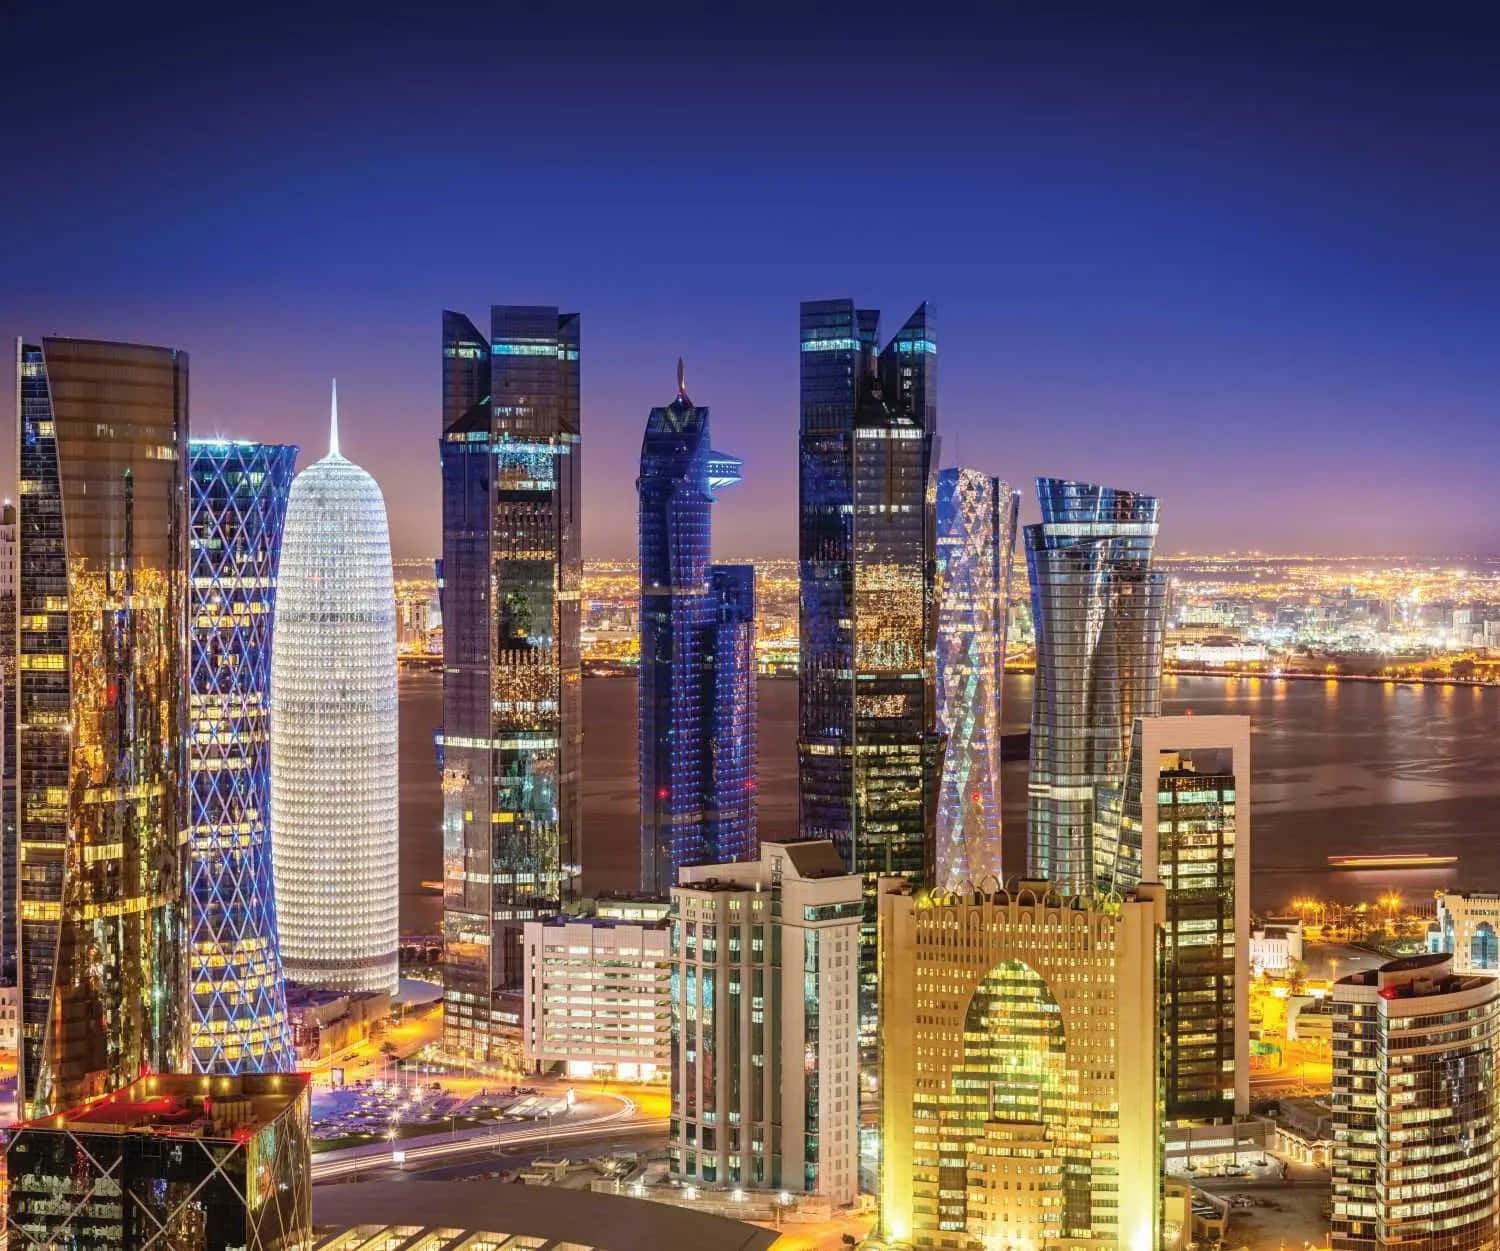 Ansichtder Prächtigen Wolkenkratzer In Doha, Katar.